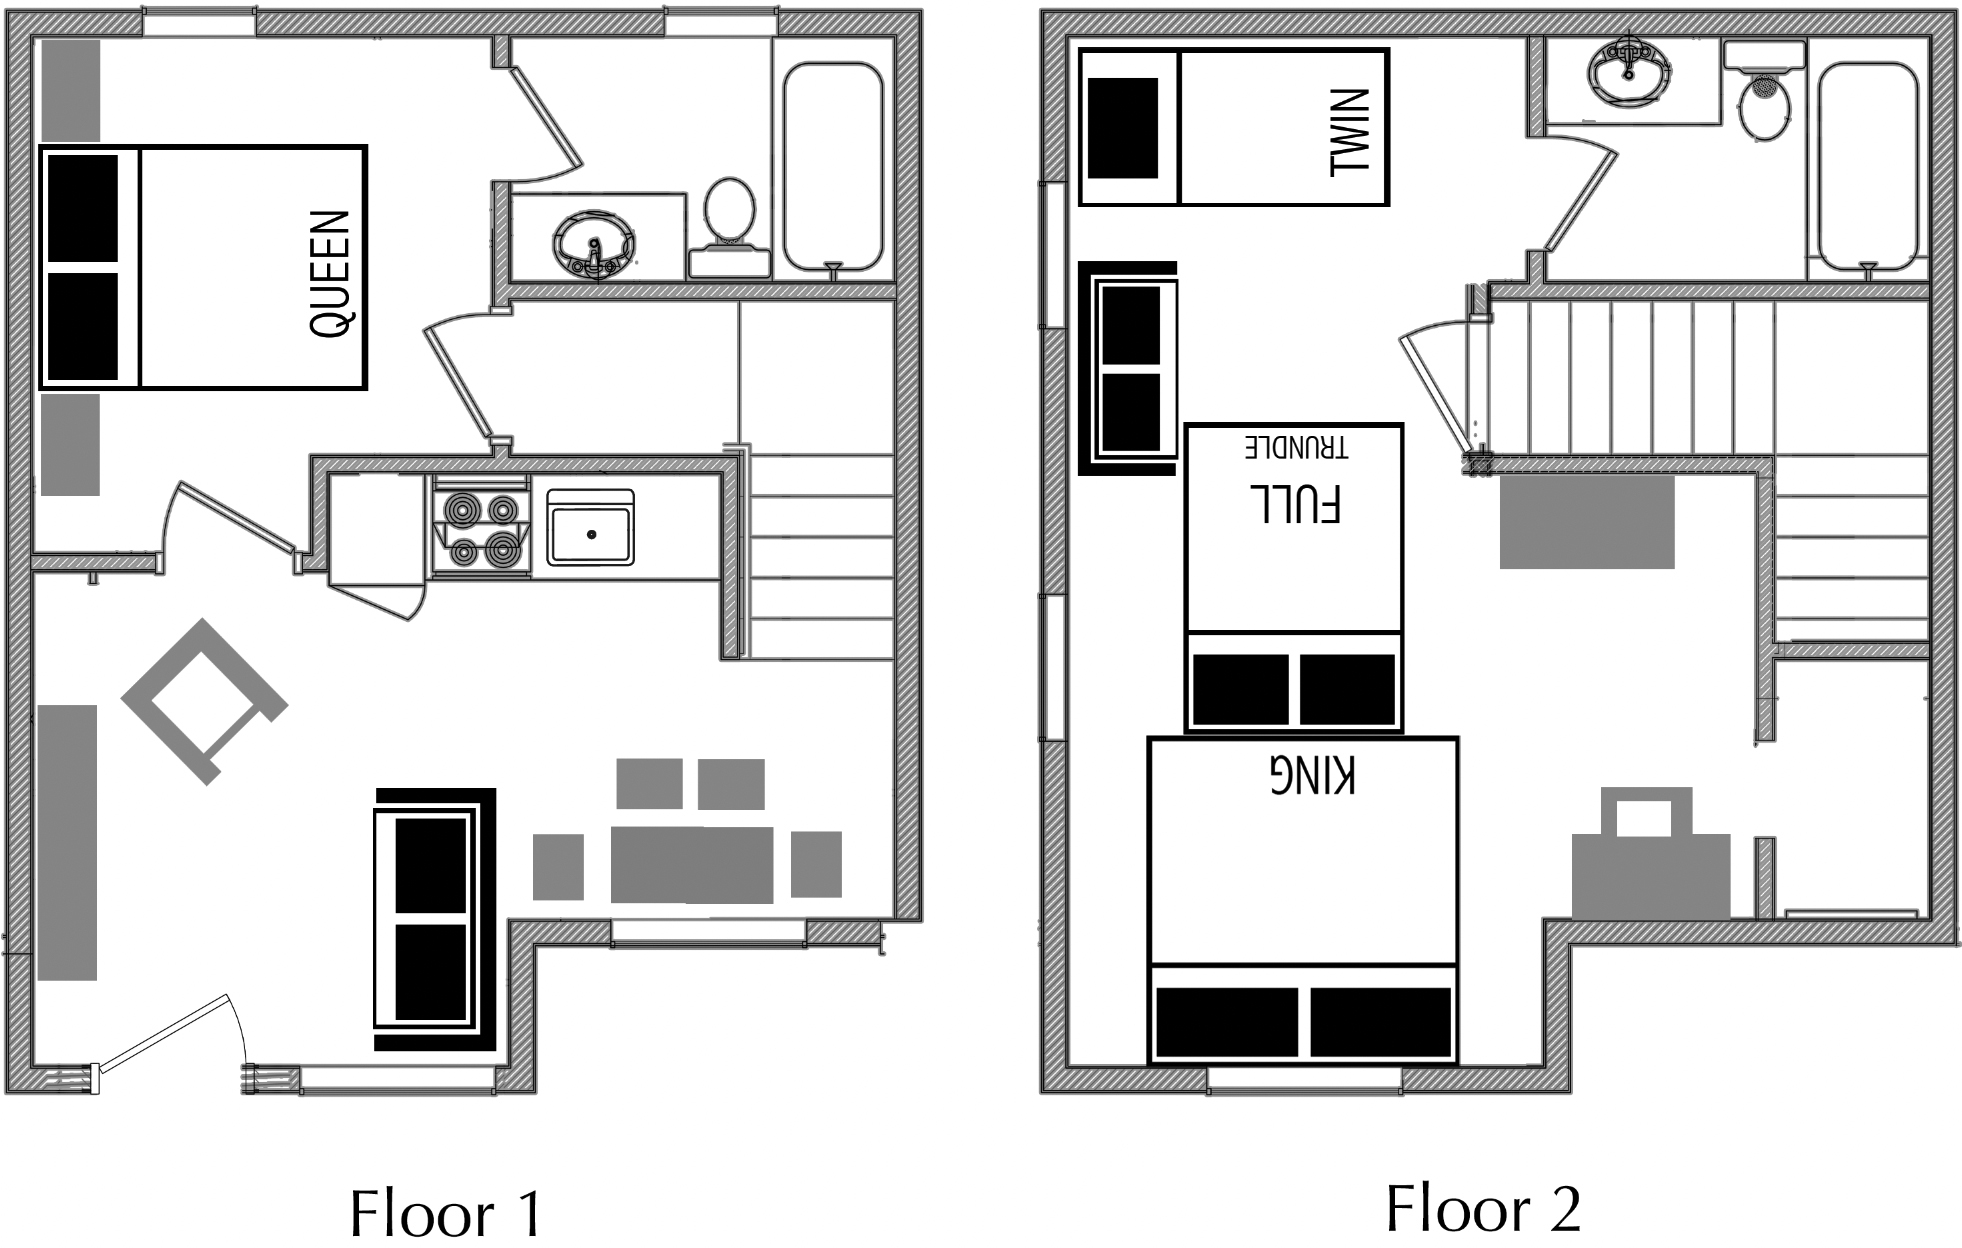 2-bedroom Vacation Rental Floor Plan